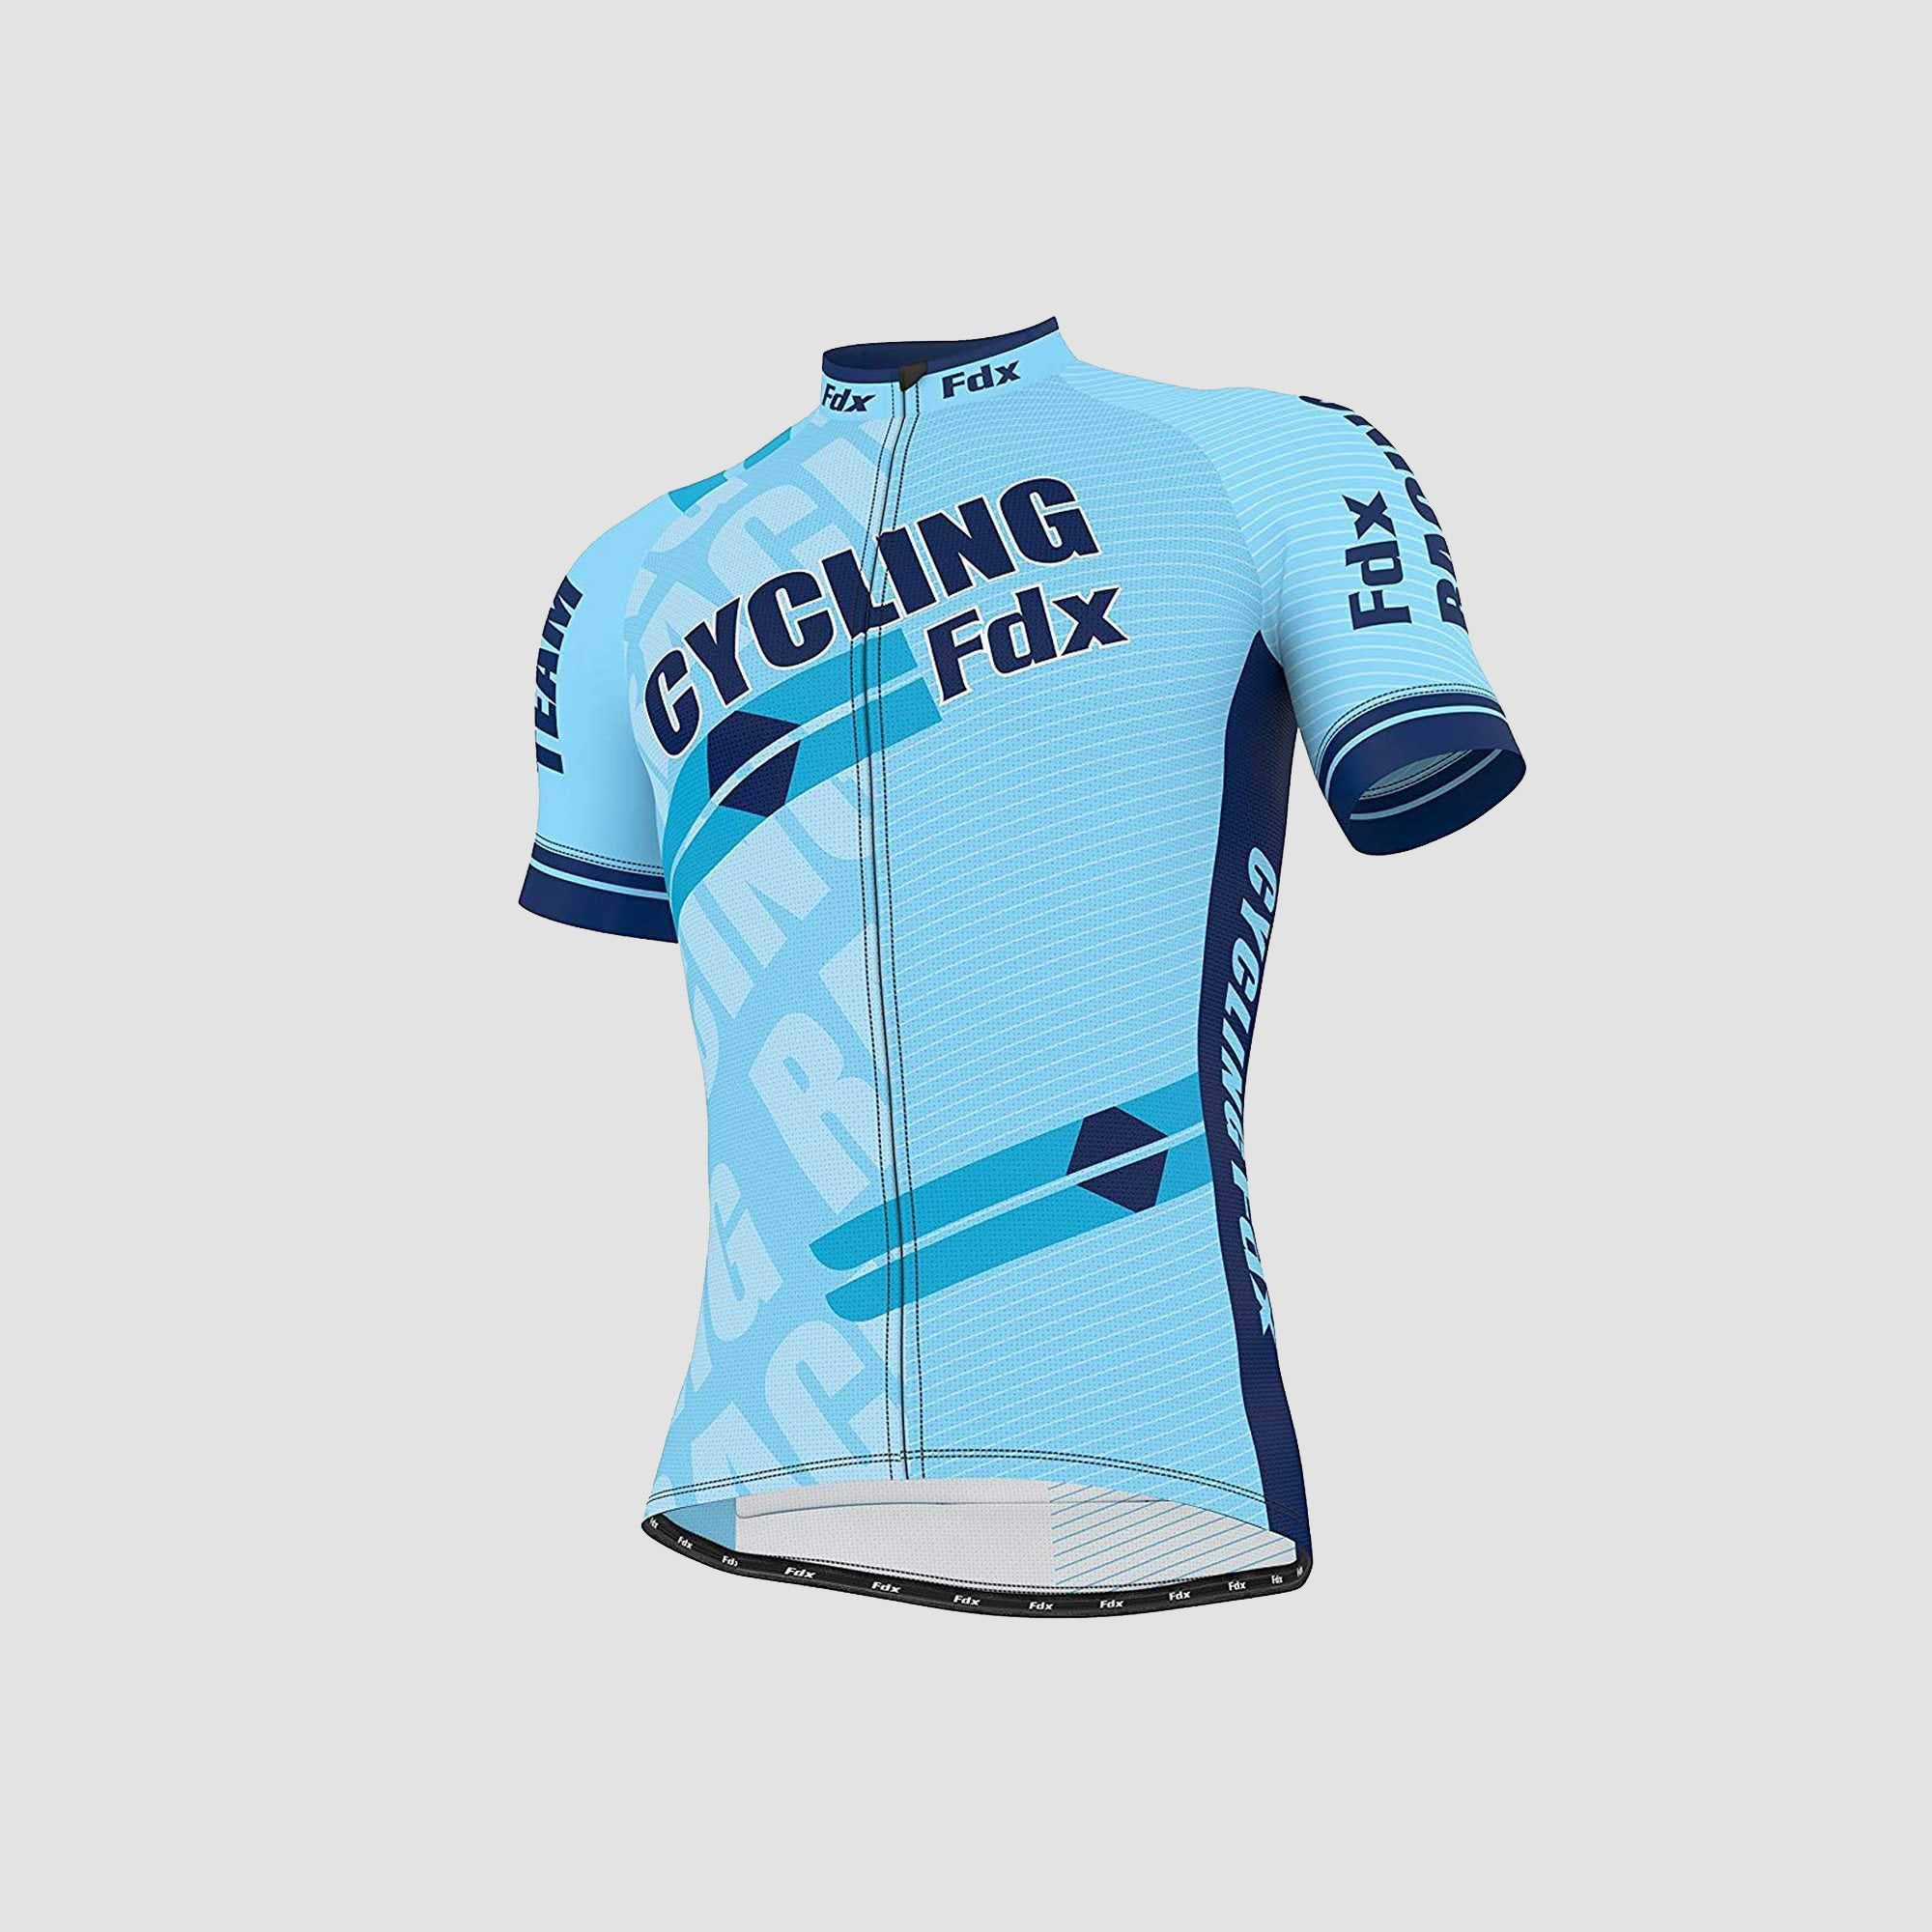 Fdx Mens Sky Blue Short Sleeve Cycling Jersey for Summer Best Road Bike Wear Top Light Weight, Full Zipper, Pockets & Hi-viz Reflectors - Core